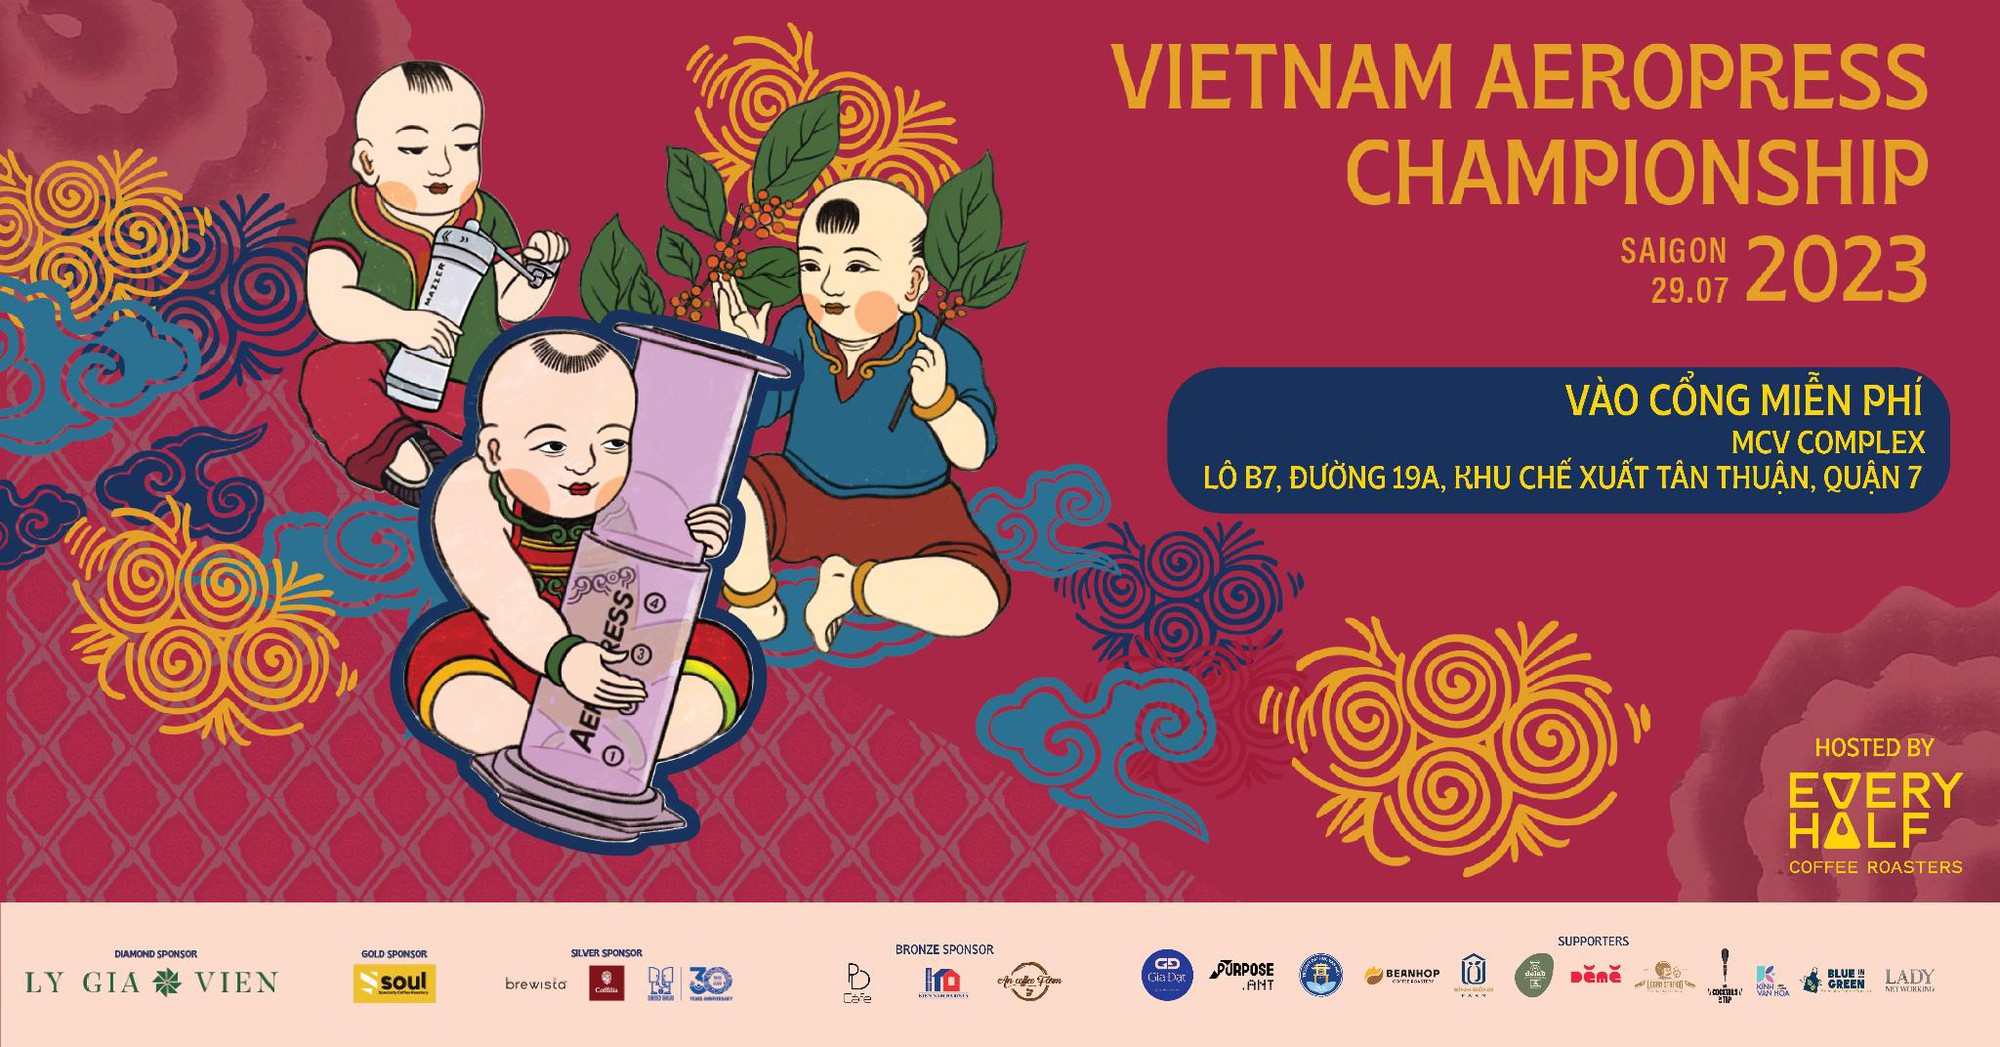  “Viet Nam Aeropress Championship 2023”, sự kiện dành riêng cho tín đồ của Aeropress